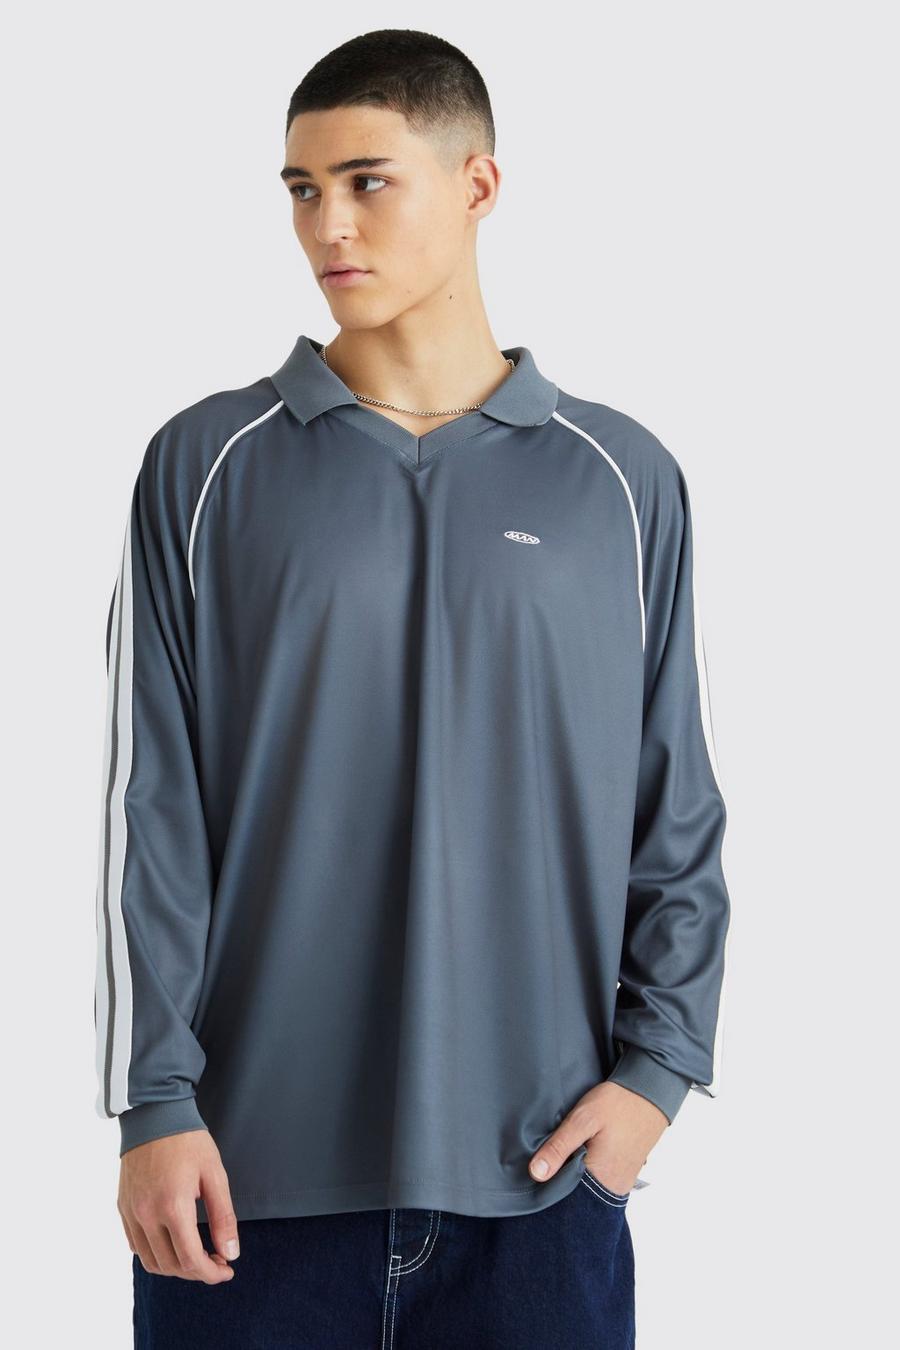 Slate blue Fotbollsskjorta i mesh med raglanärm